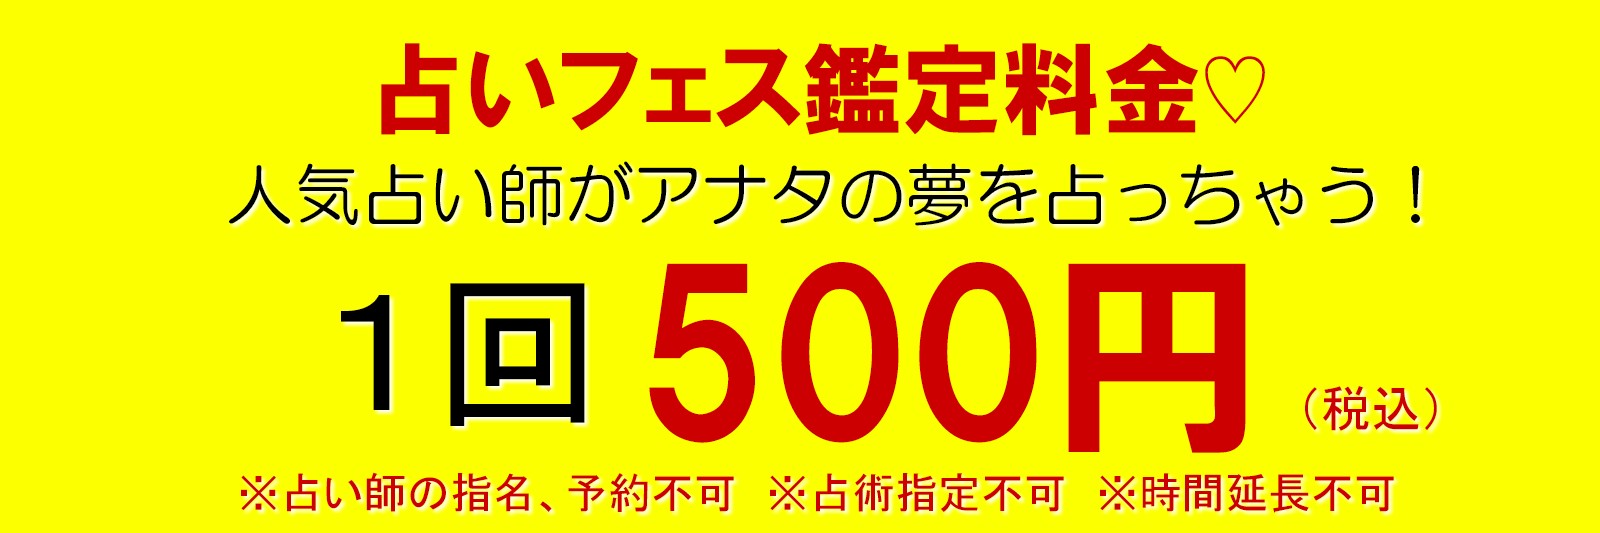 東京・六本木占いなら『占いフェス2018NEWYEAR』がオススメ！六本木ヒルズで開催される人気イベントでは有名占い師・予約が取れない占い師の鑑定が1回500円と安心価格にて受けることが出来ます。